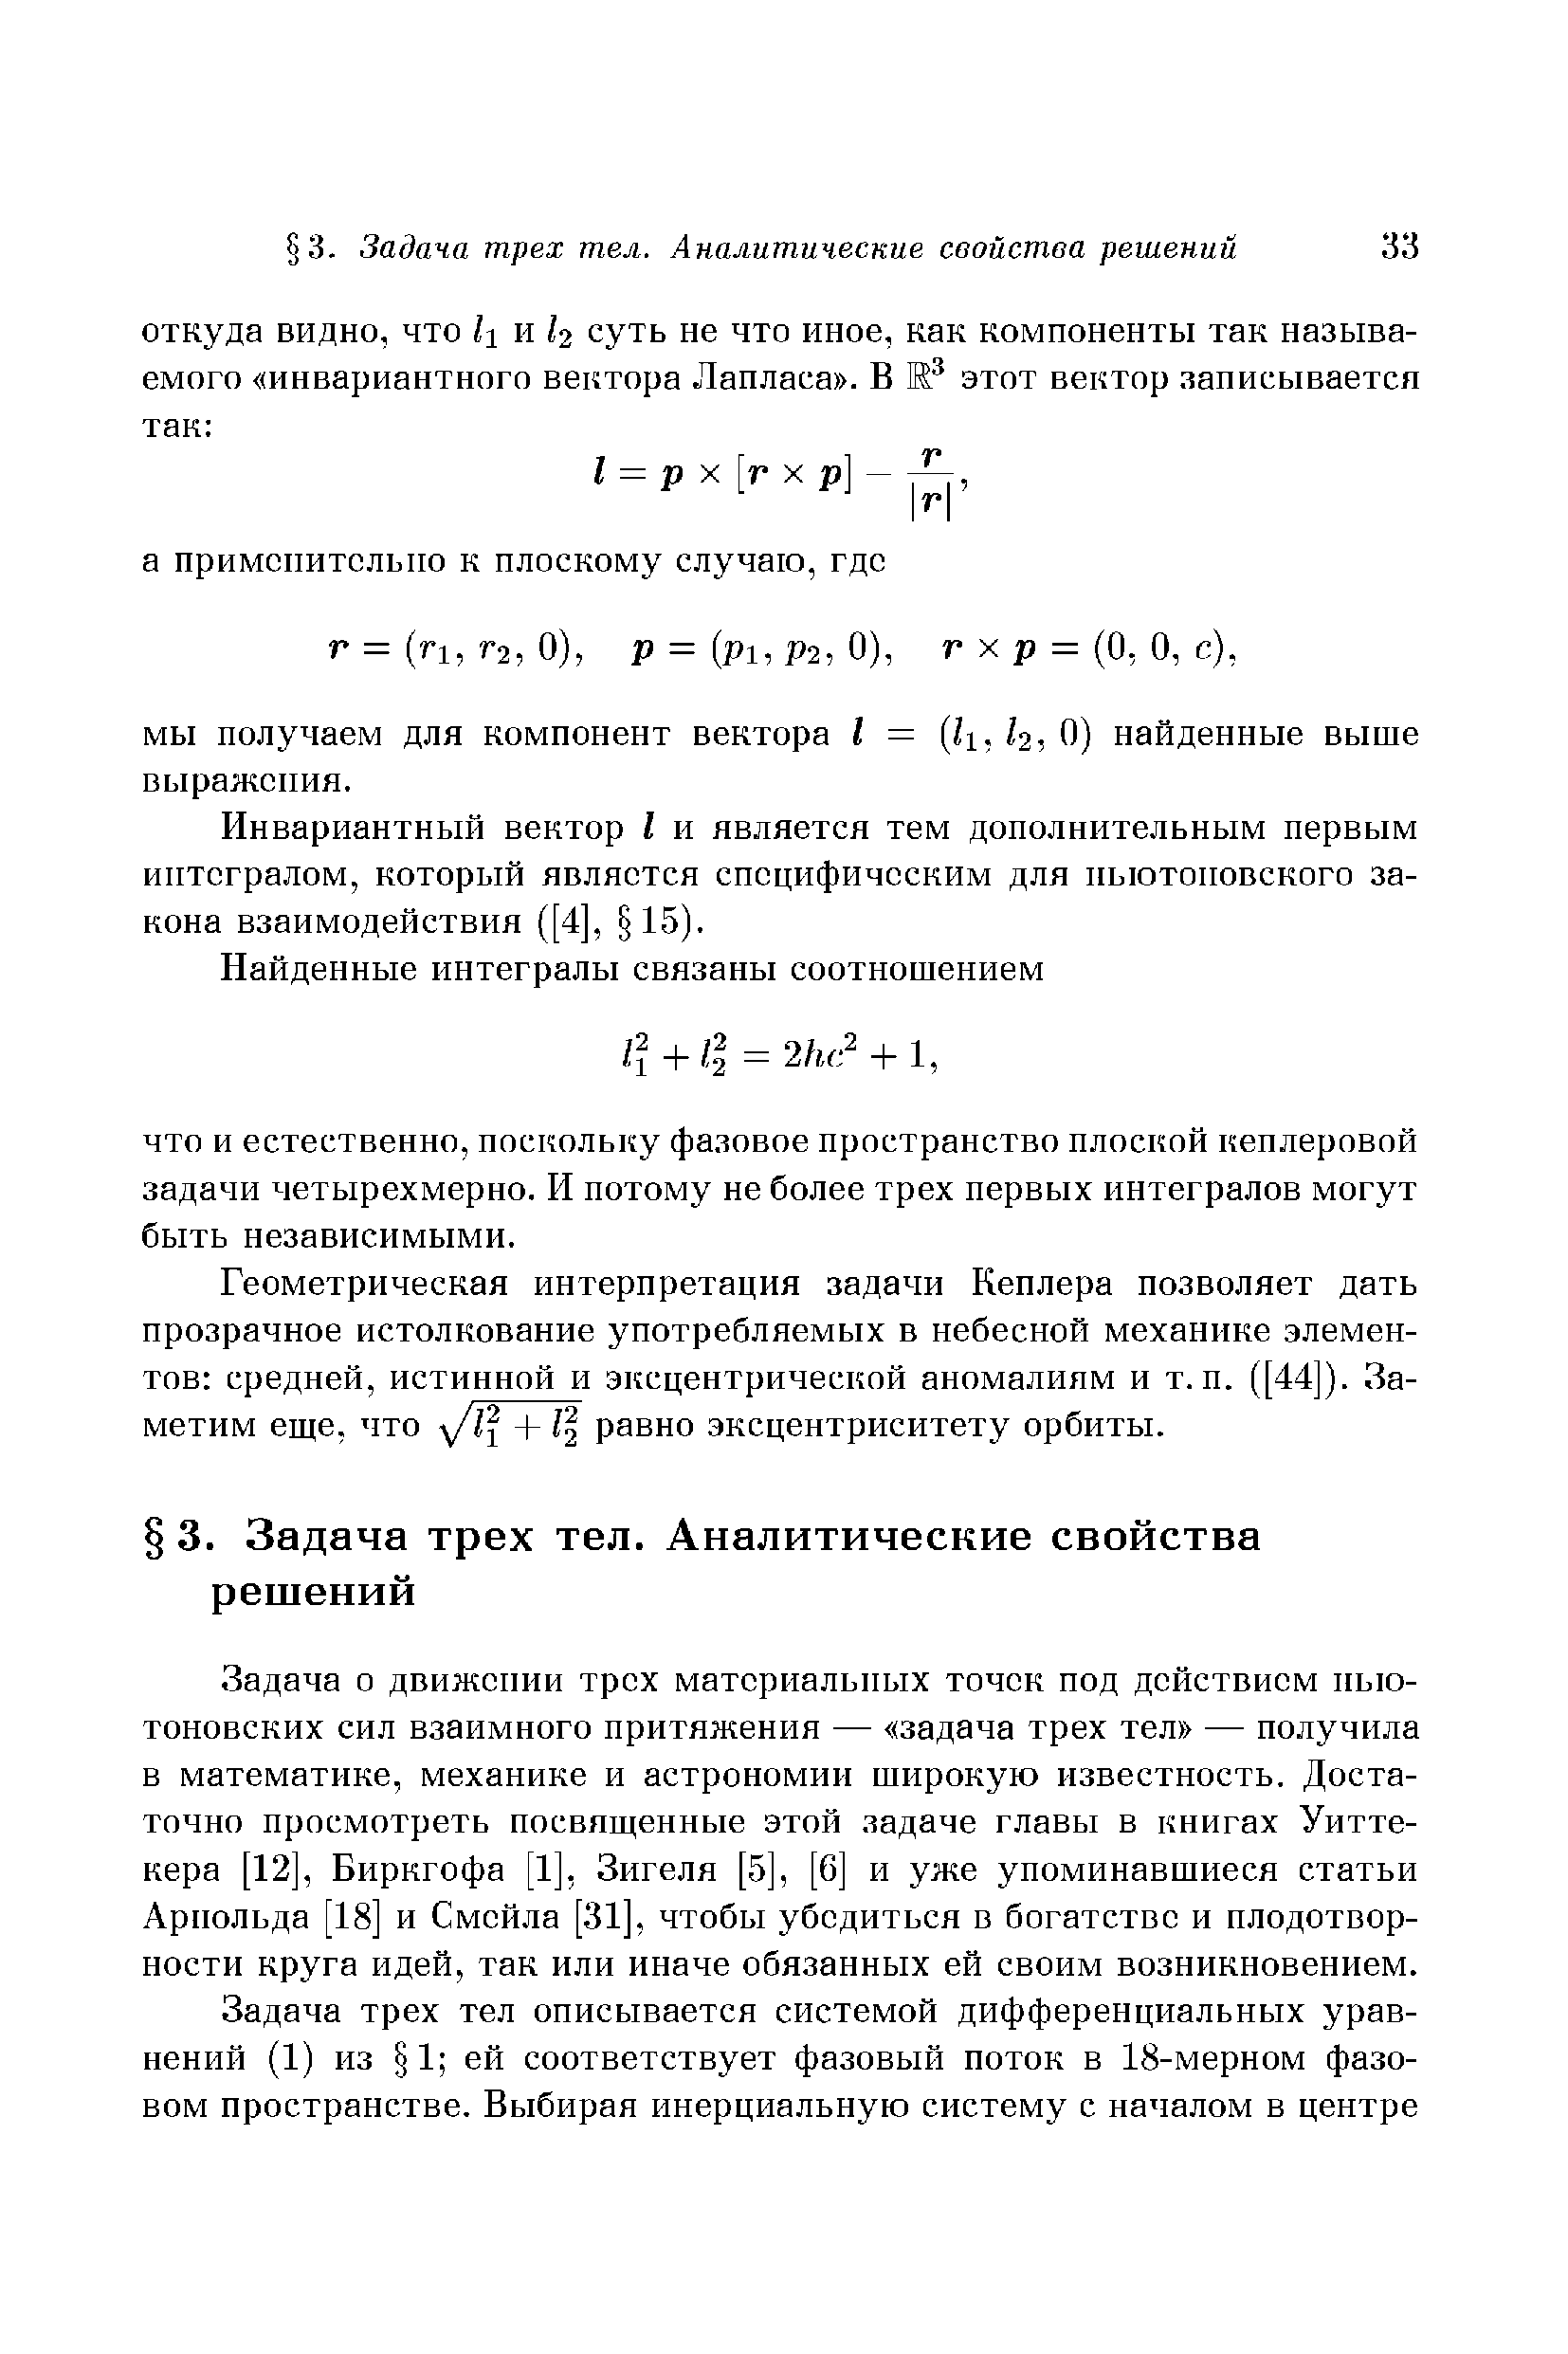 Инвариантный вектор I и является тем дополнительным первым интегралом, который является специфическим для ньютоновского закона взаимодействия ([4], 15).
